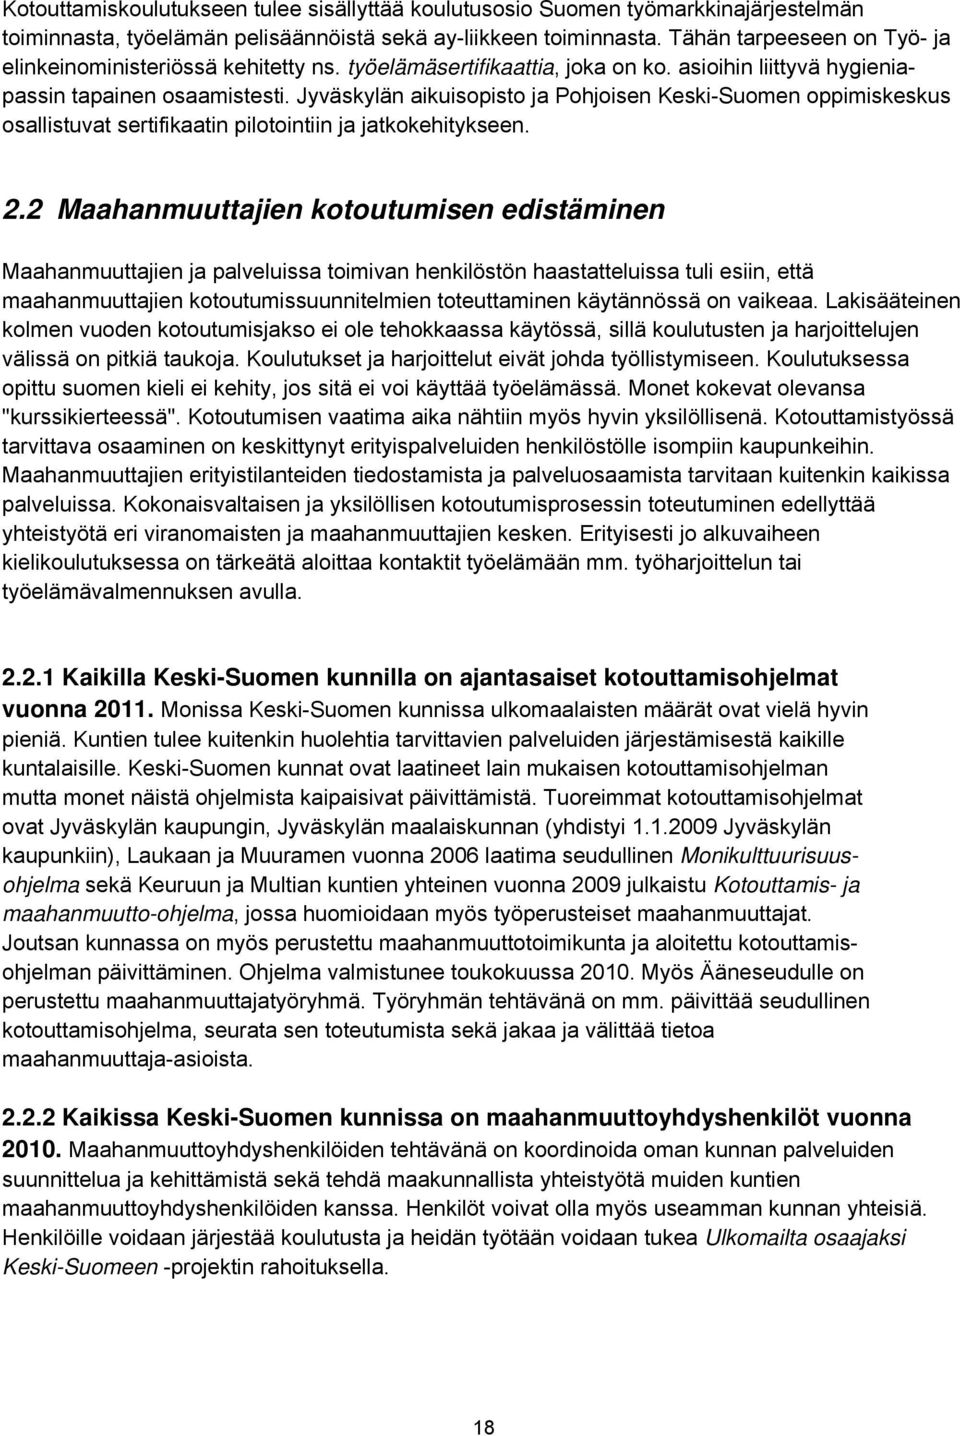 Jyväskylän aikuisopisto ja Pohjoisen Keski-Suomen oppimiskeskus osallistuvat sertifikaatin pilotointiin ja jatkokehitykseen. 2.